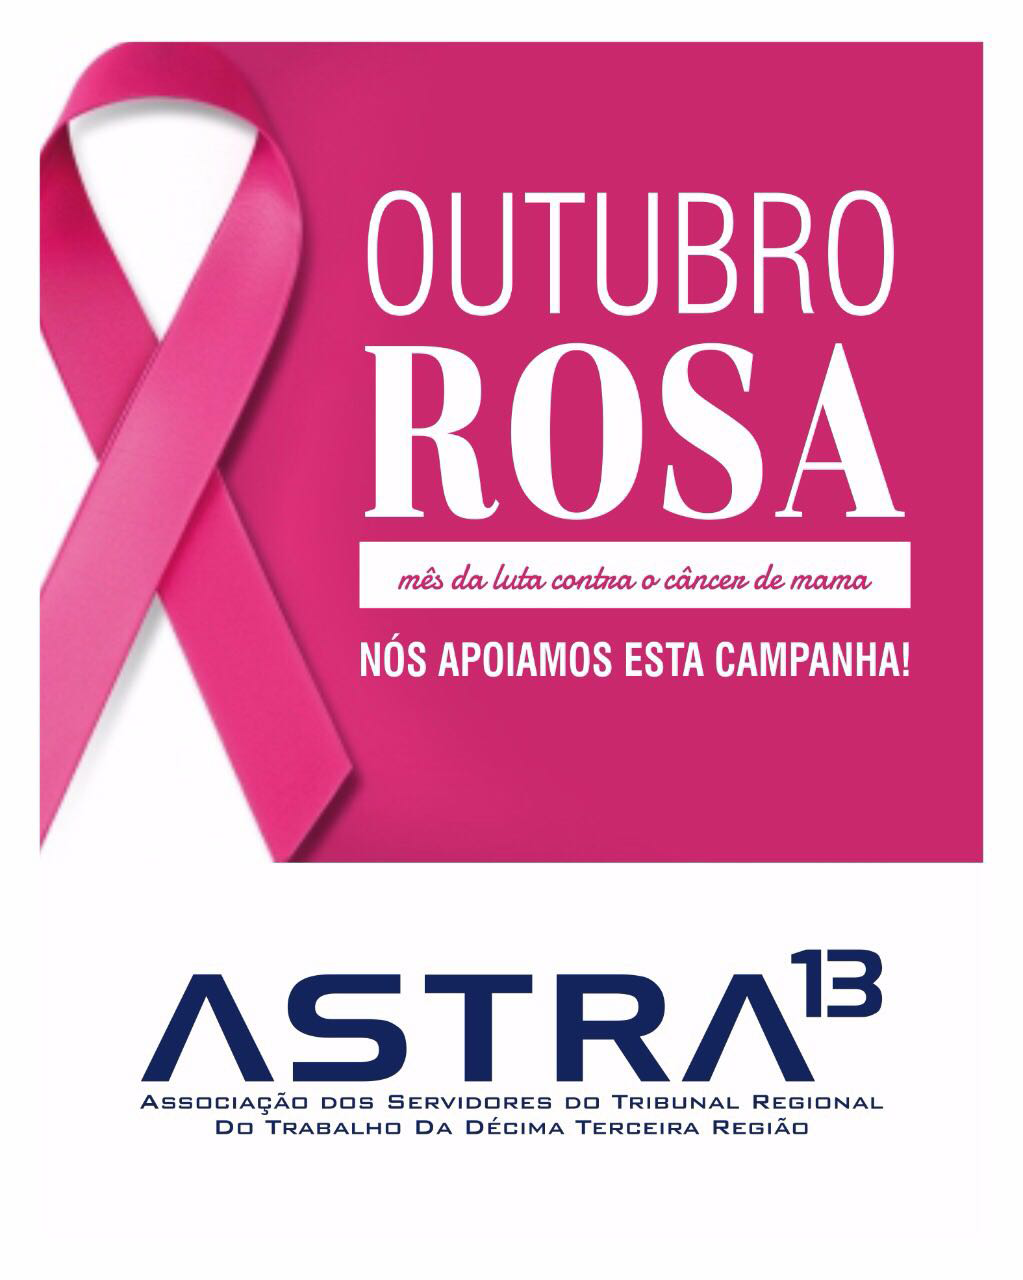 A Astra 13 apoia o Outubro Rosa 